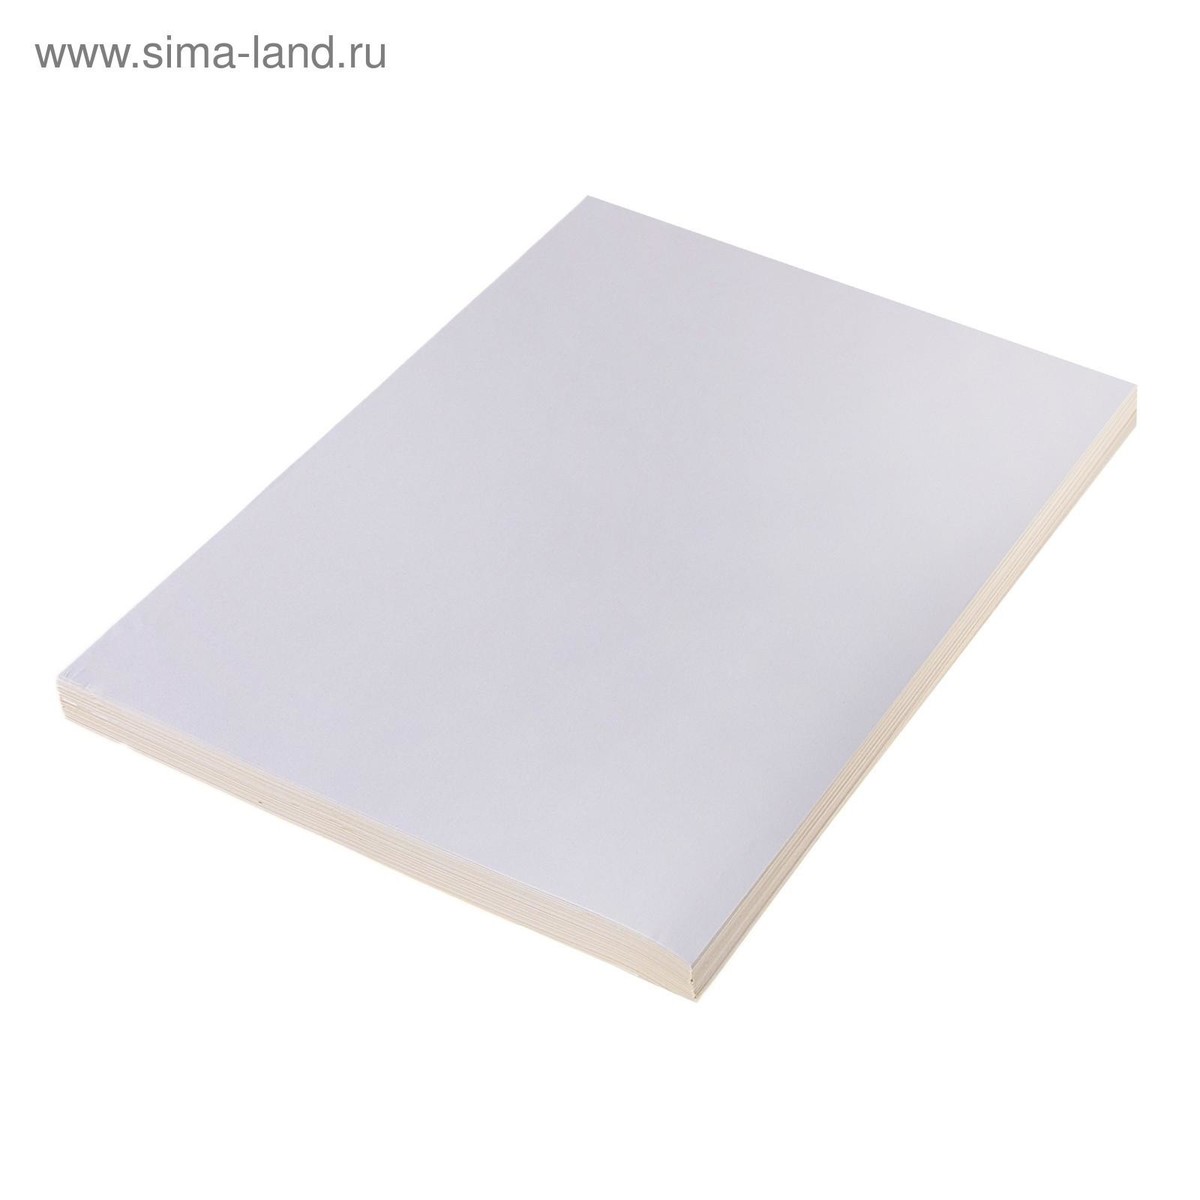 Бумага а4, 25 листов, 80 г/м, самоклеящаяся, белая матовая краска для стен и потолков белорро дискаунт матовая белая 2 5кг